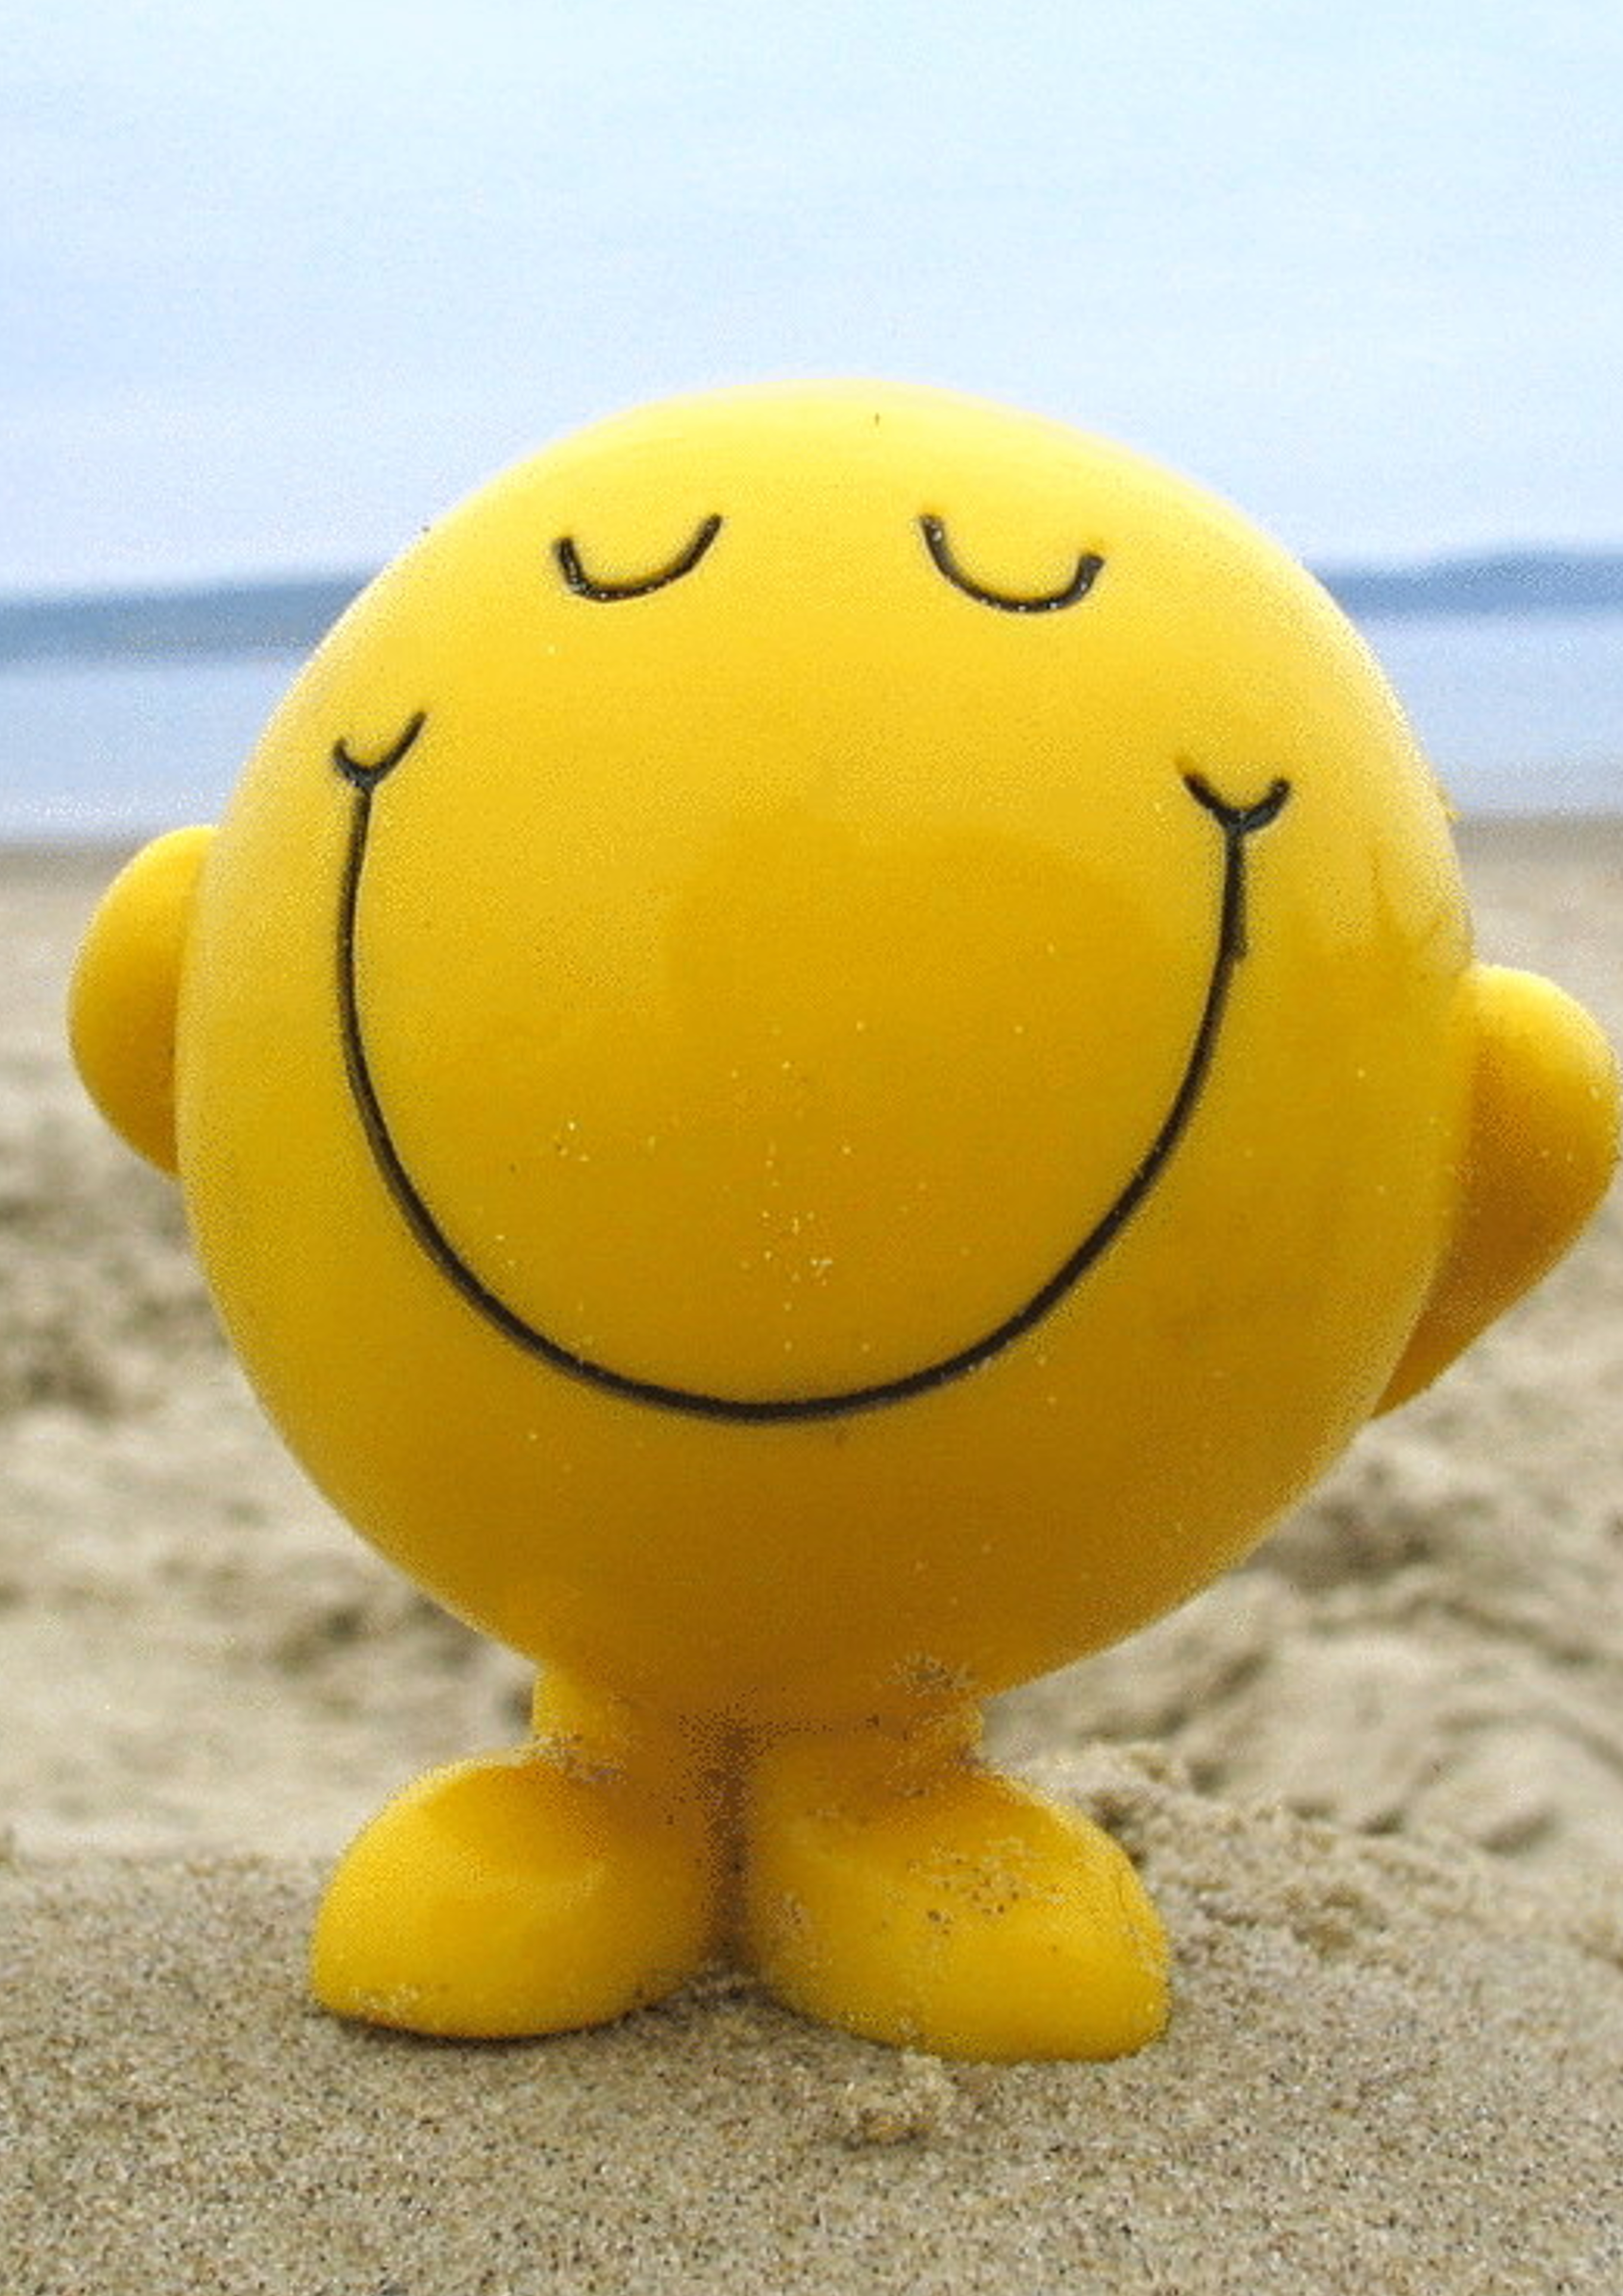 Акция позитива в рамках Всемирного дня улыбки «Поделись улыбкою своей»